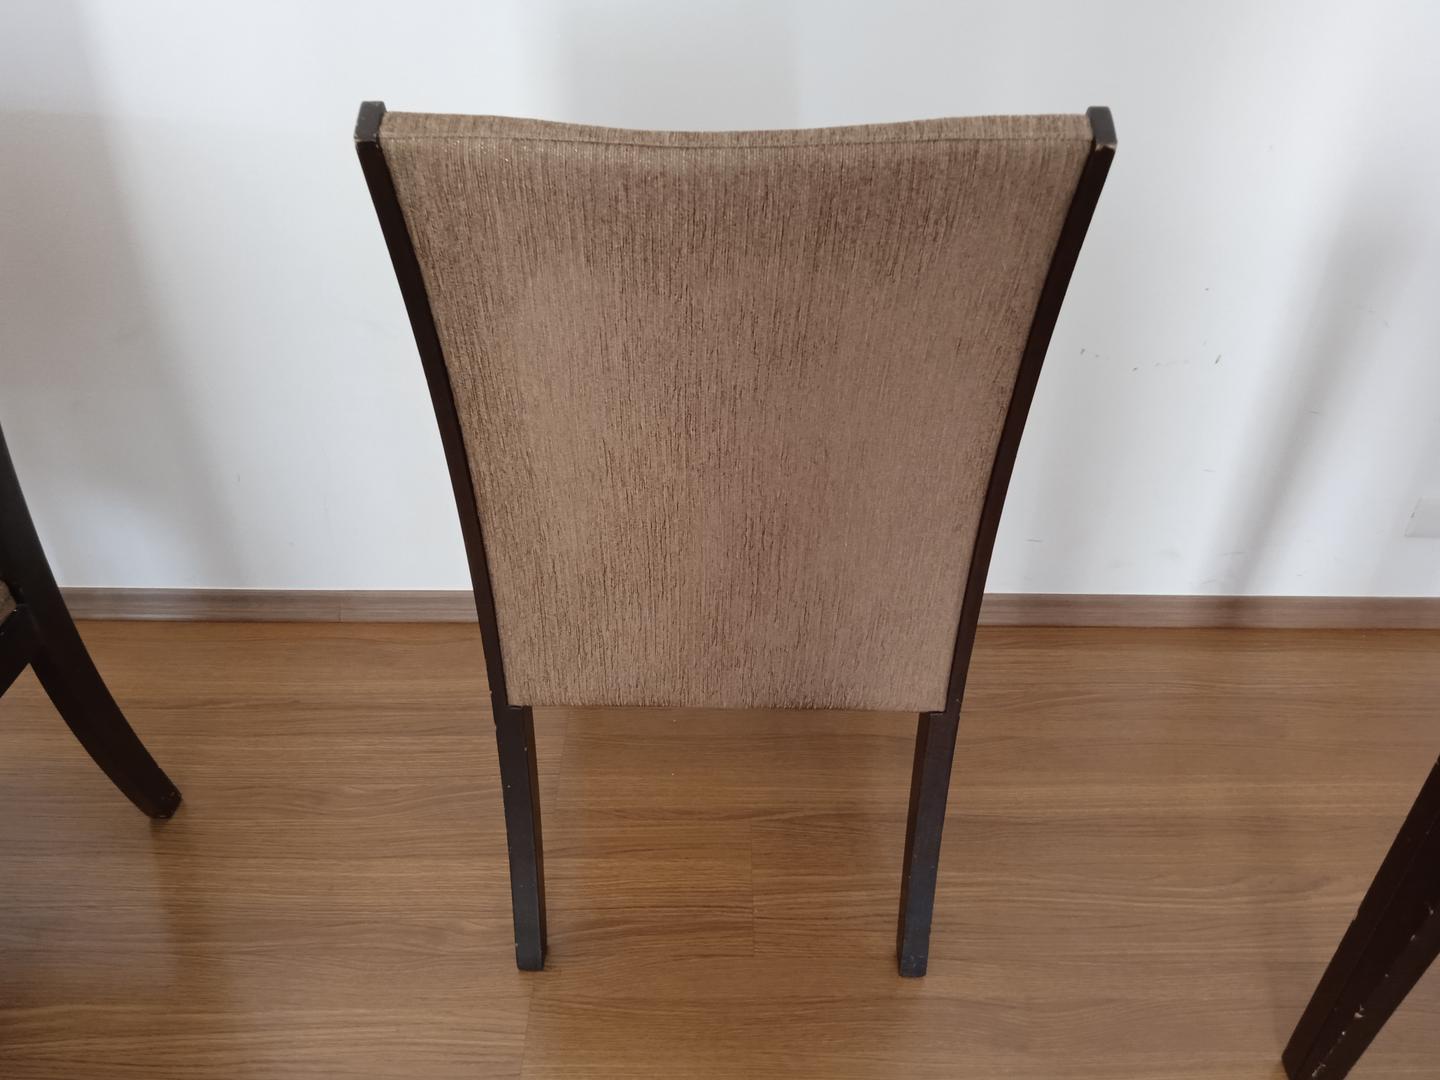 Cadeira fixa estofada s/ braços em Madeira / Estofado Marrom 98 cm x 48 cm x 56 cm